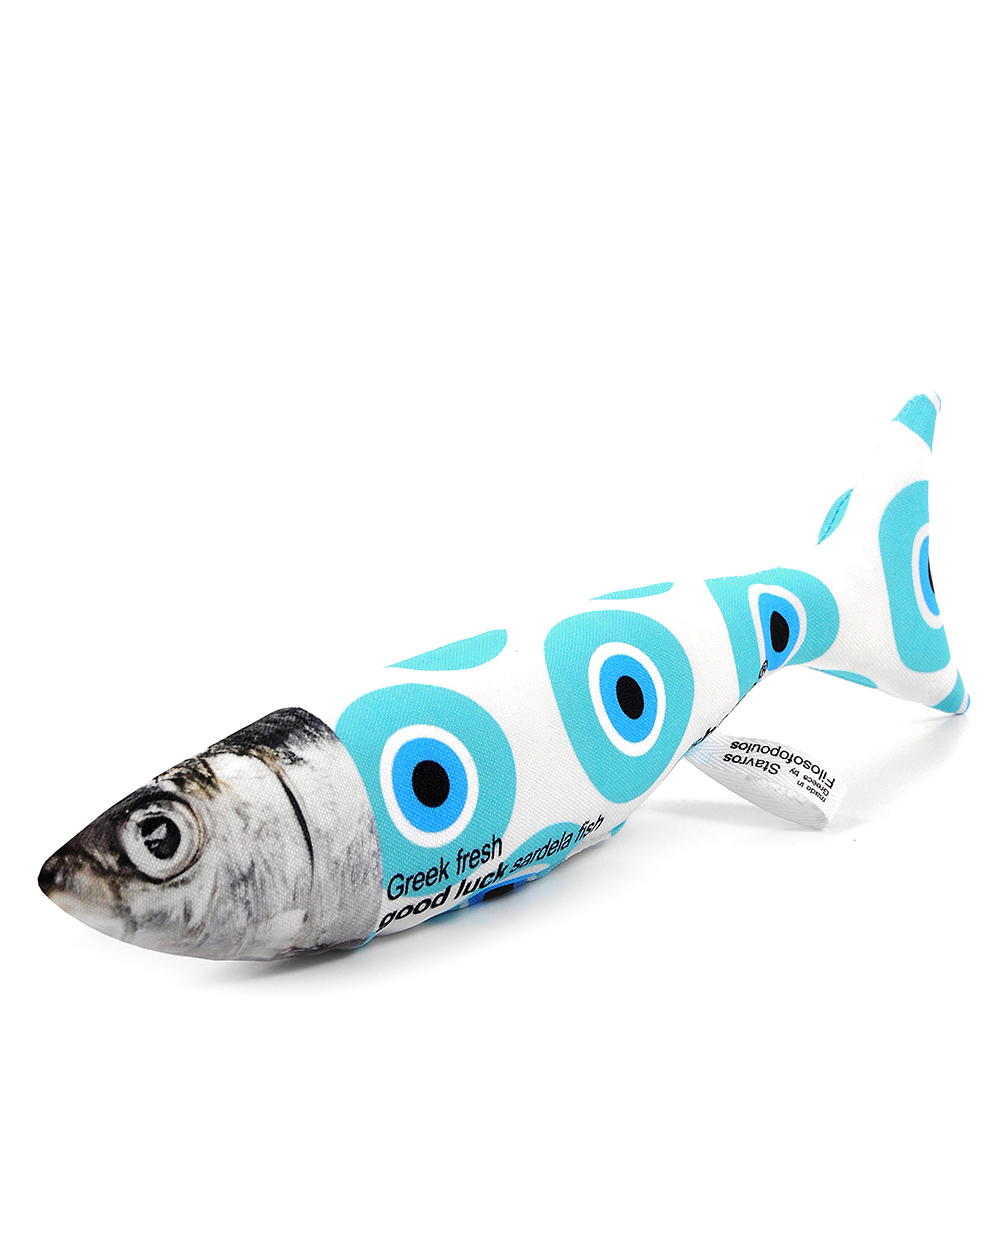 Greek eye sardine 3